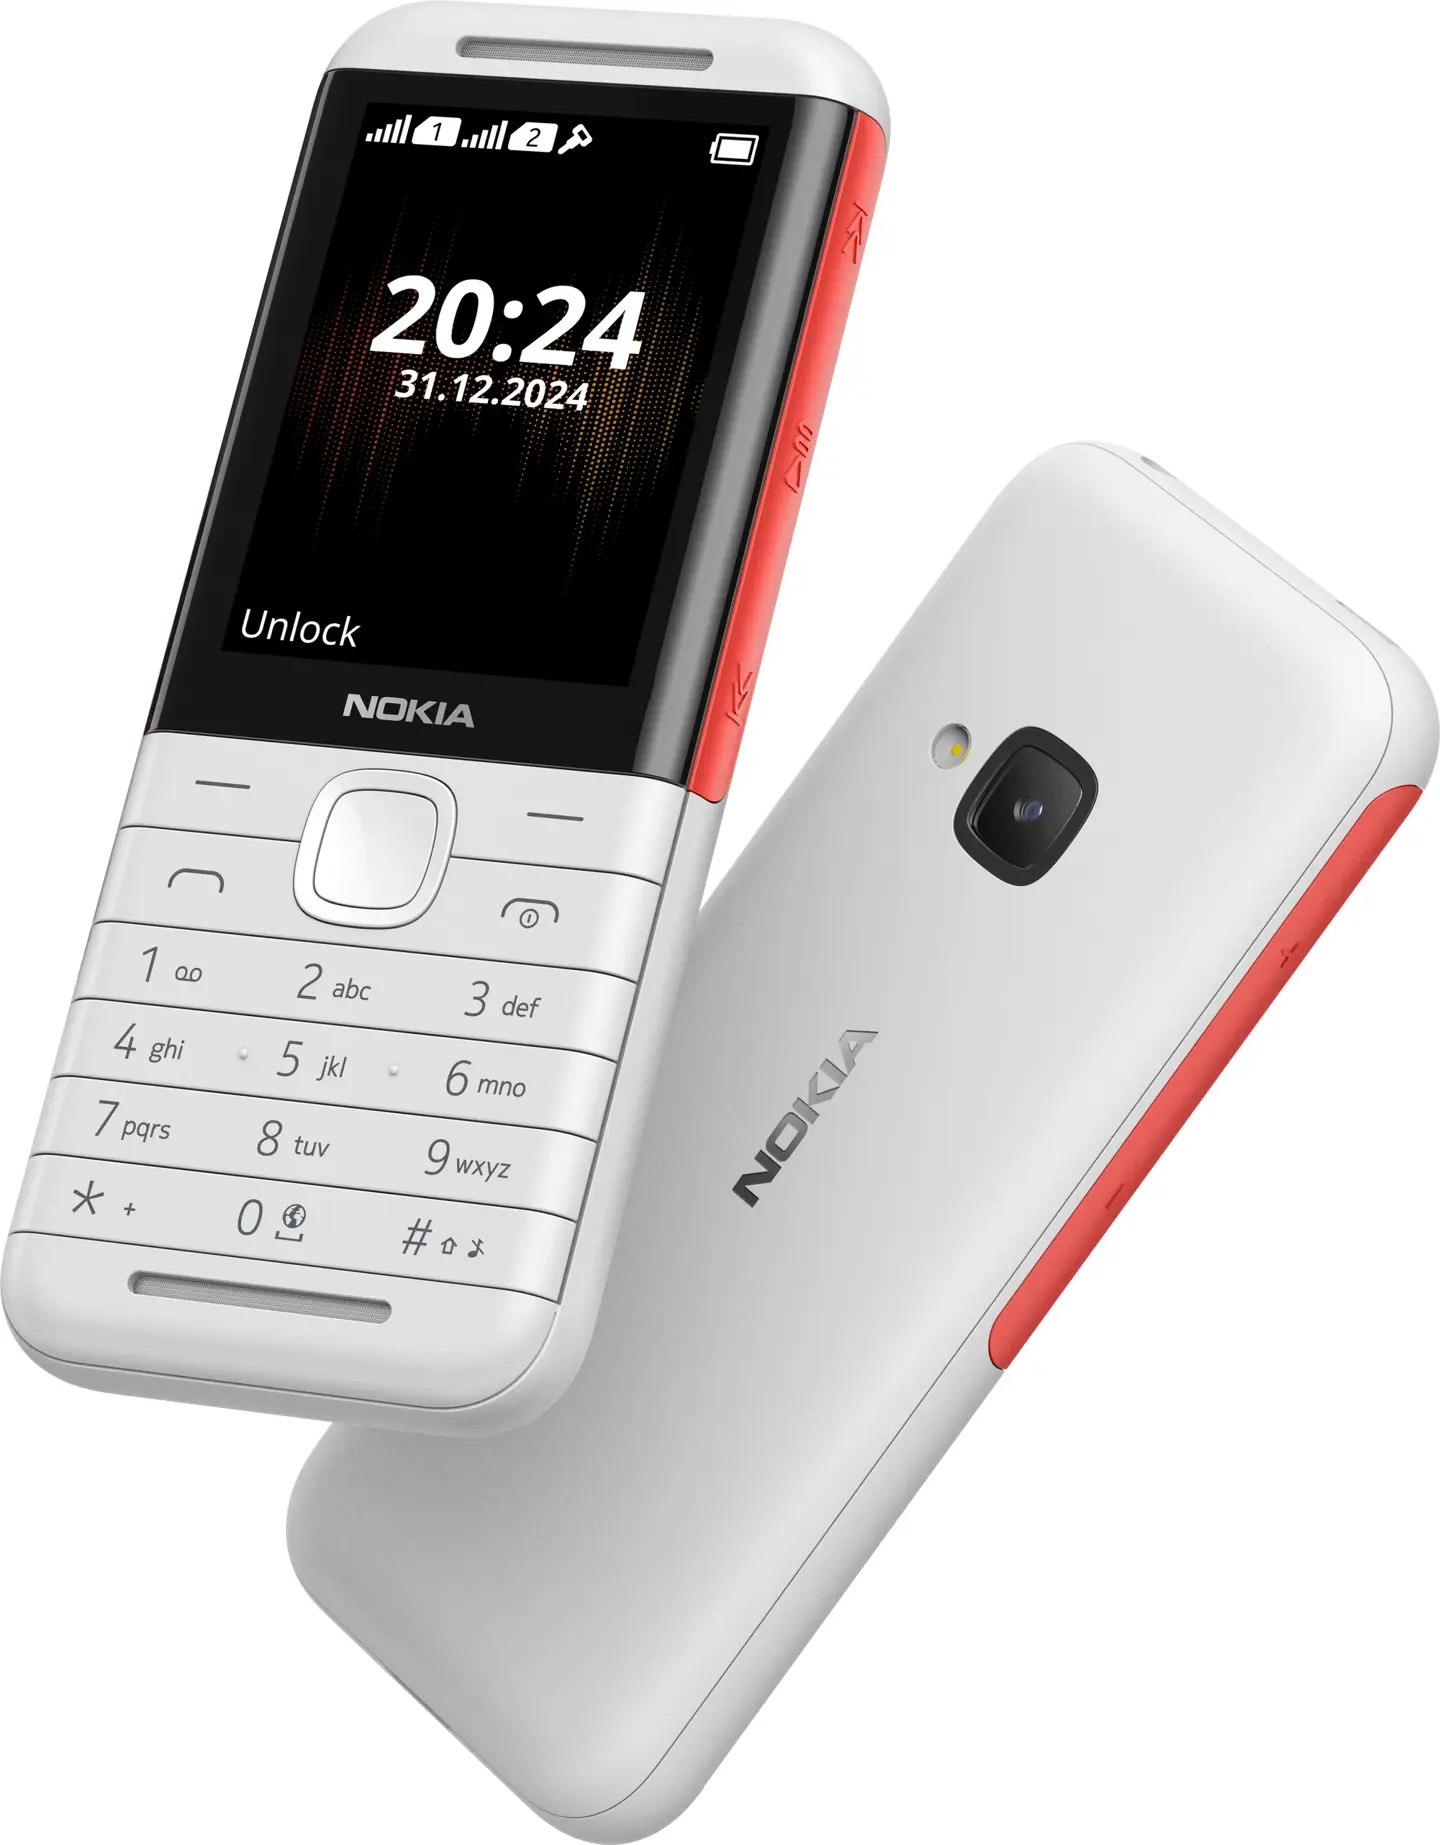 Nokia 5310 Nokia feature phones